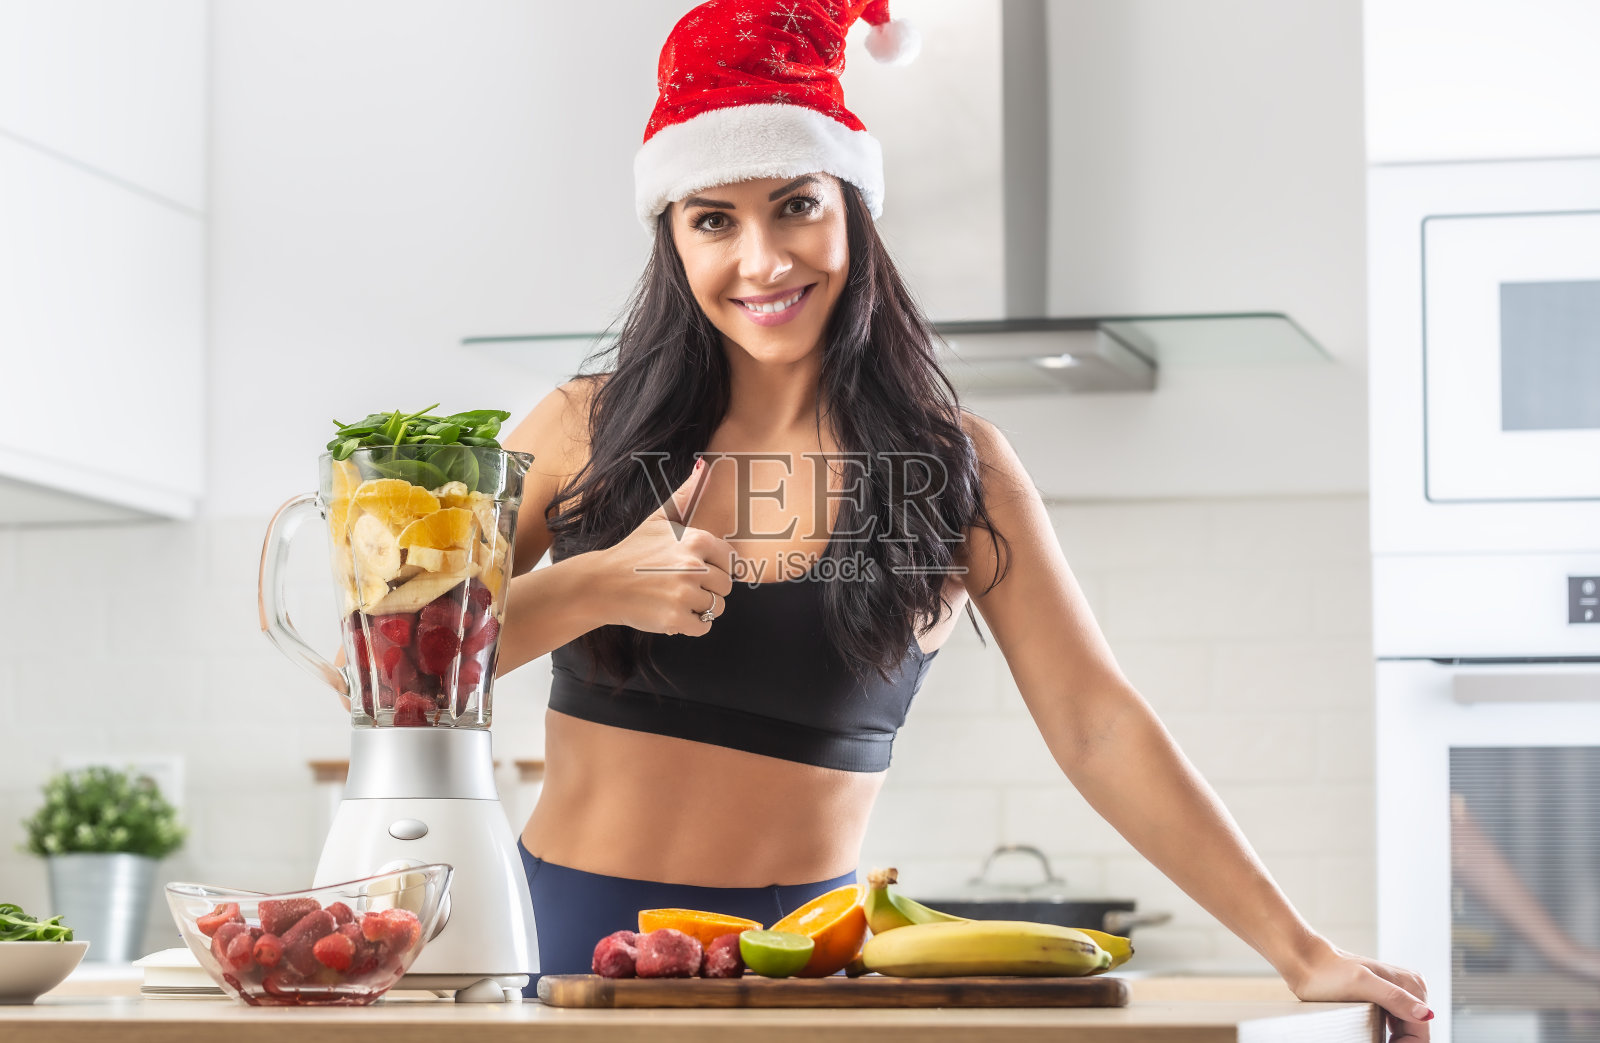 一个戴着圣诞帽、穿着运动服站在装满健康食品的健康奶昔机旁边的女人竖起大拇指。照片摄影图片